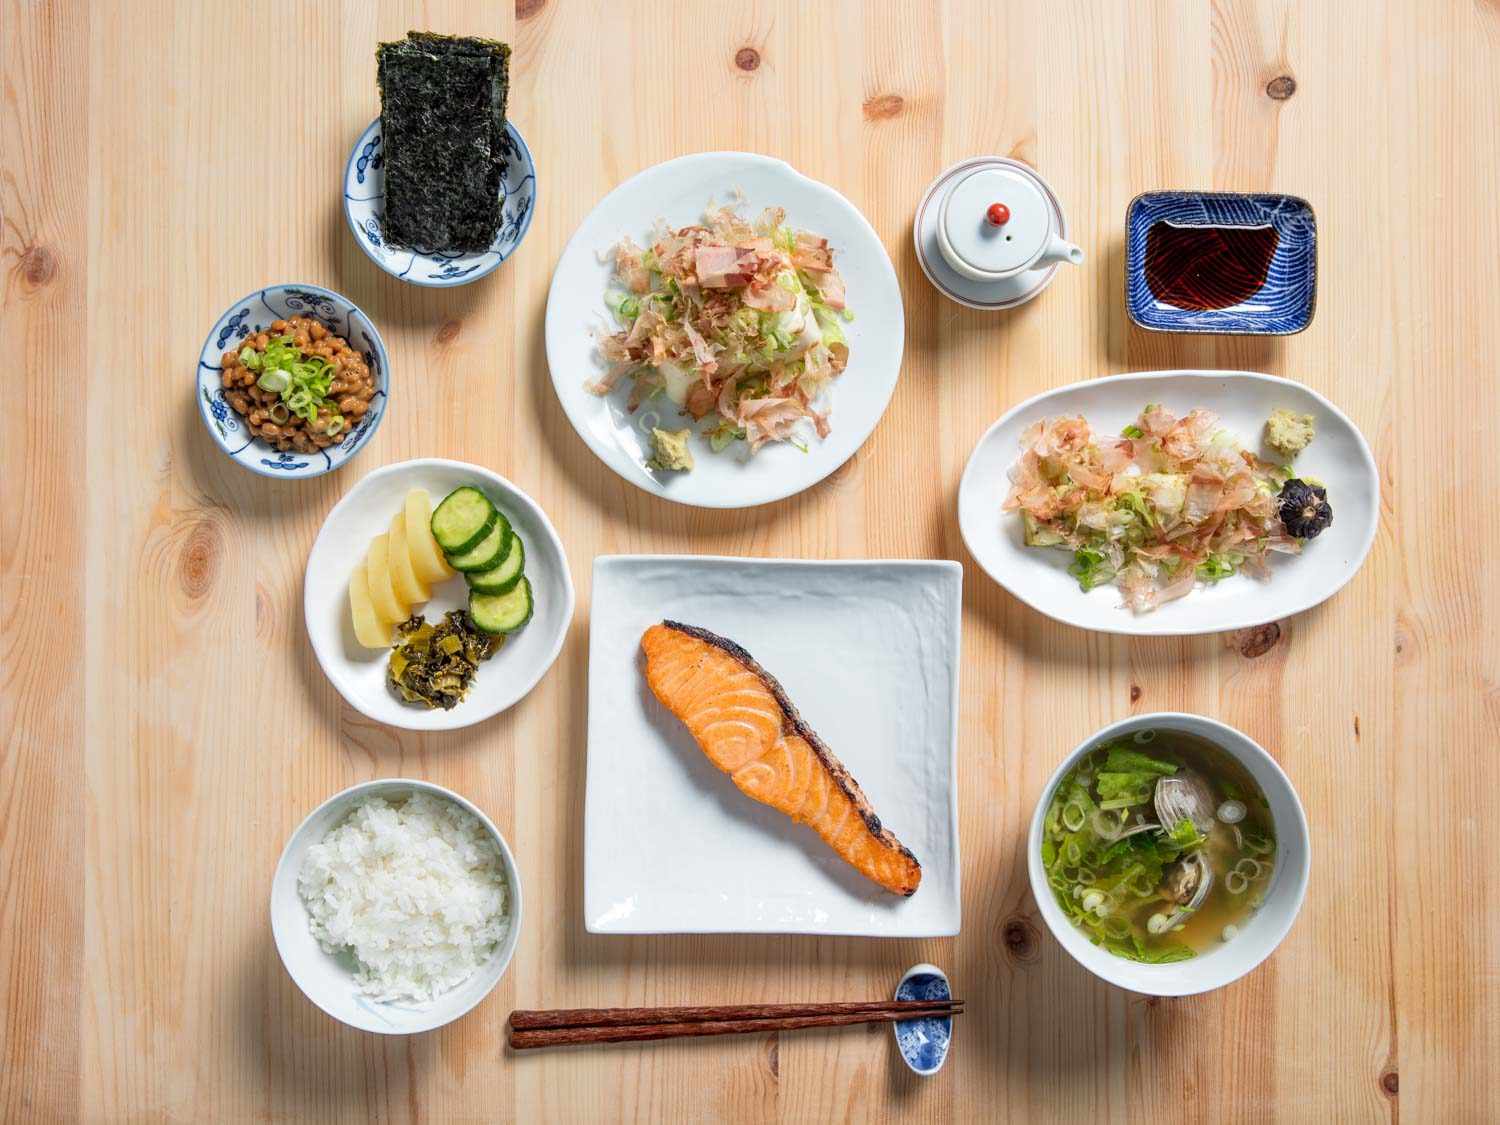 俯拍日式早餐:米饭、泡菜盘、纳豆、海苔、豆腐、酱油瓶、酱油、茄子、味增汤、木桌上的咸鱼。